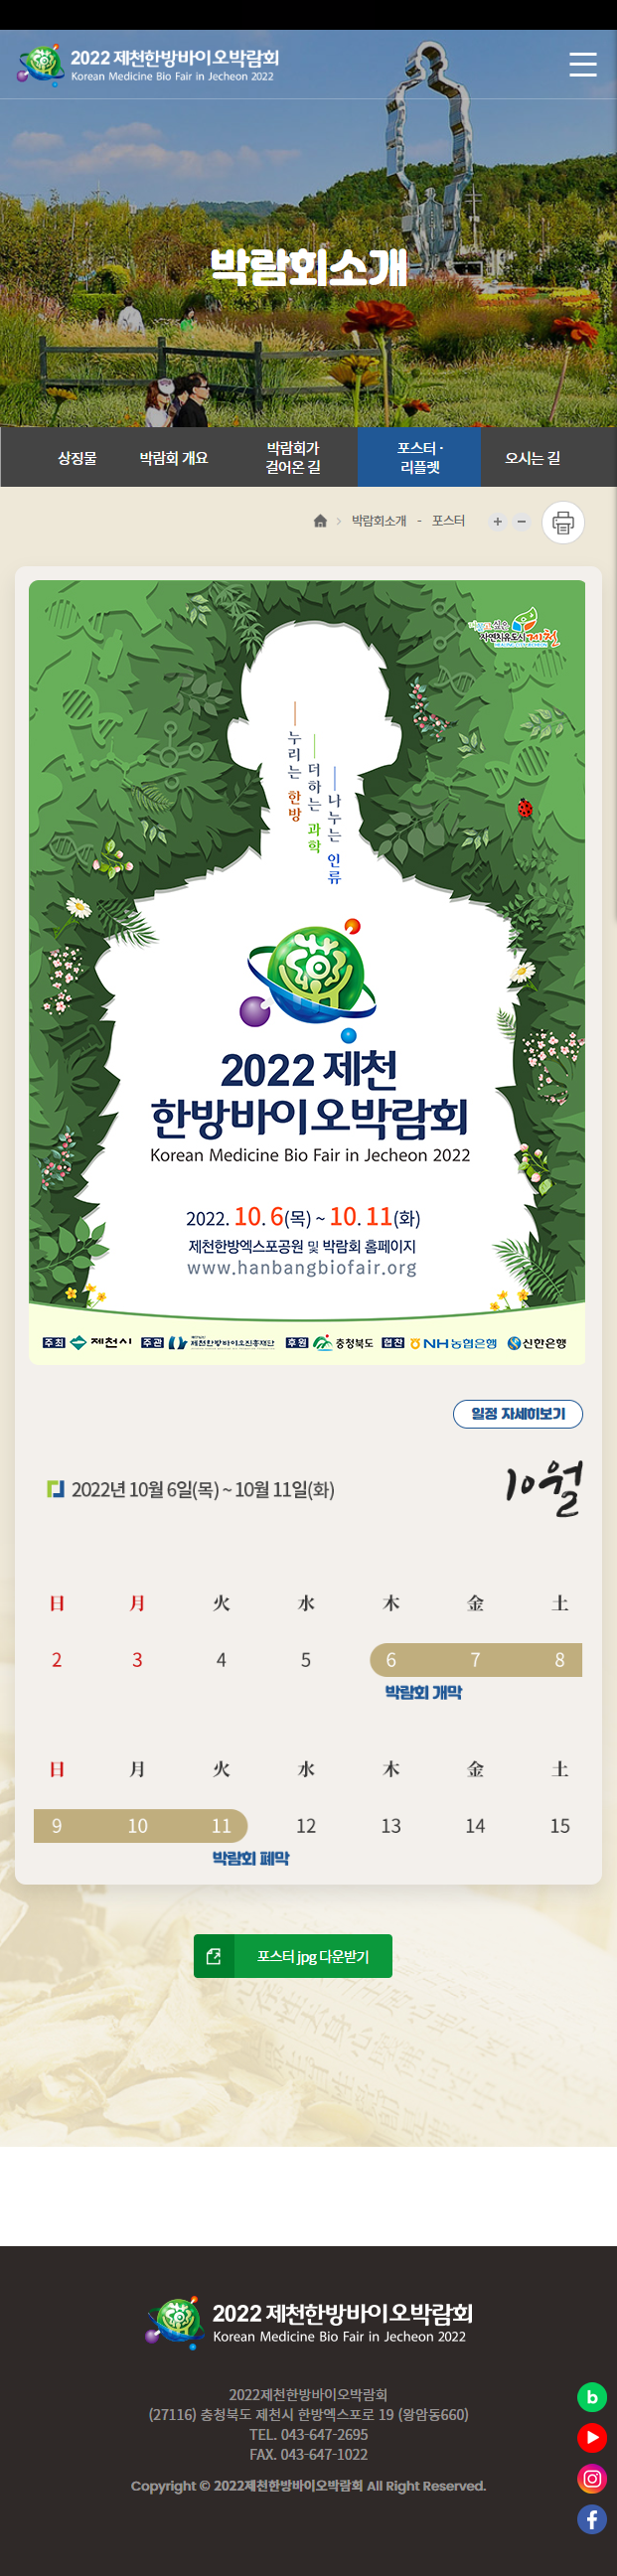 2022제천한방바이오박람회모바일캡쳐4